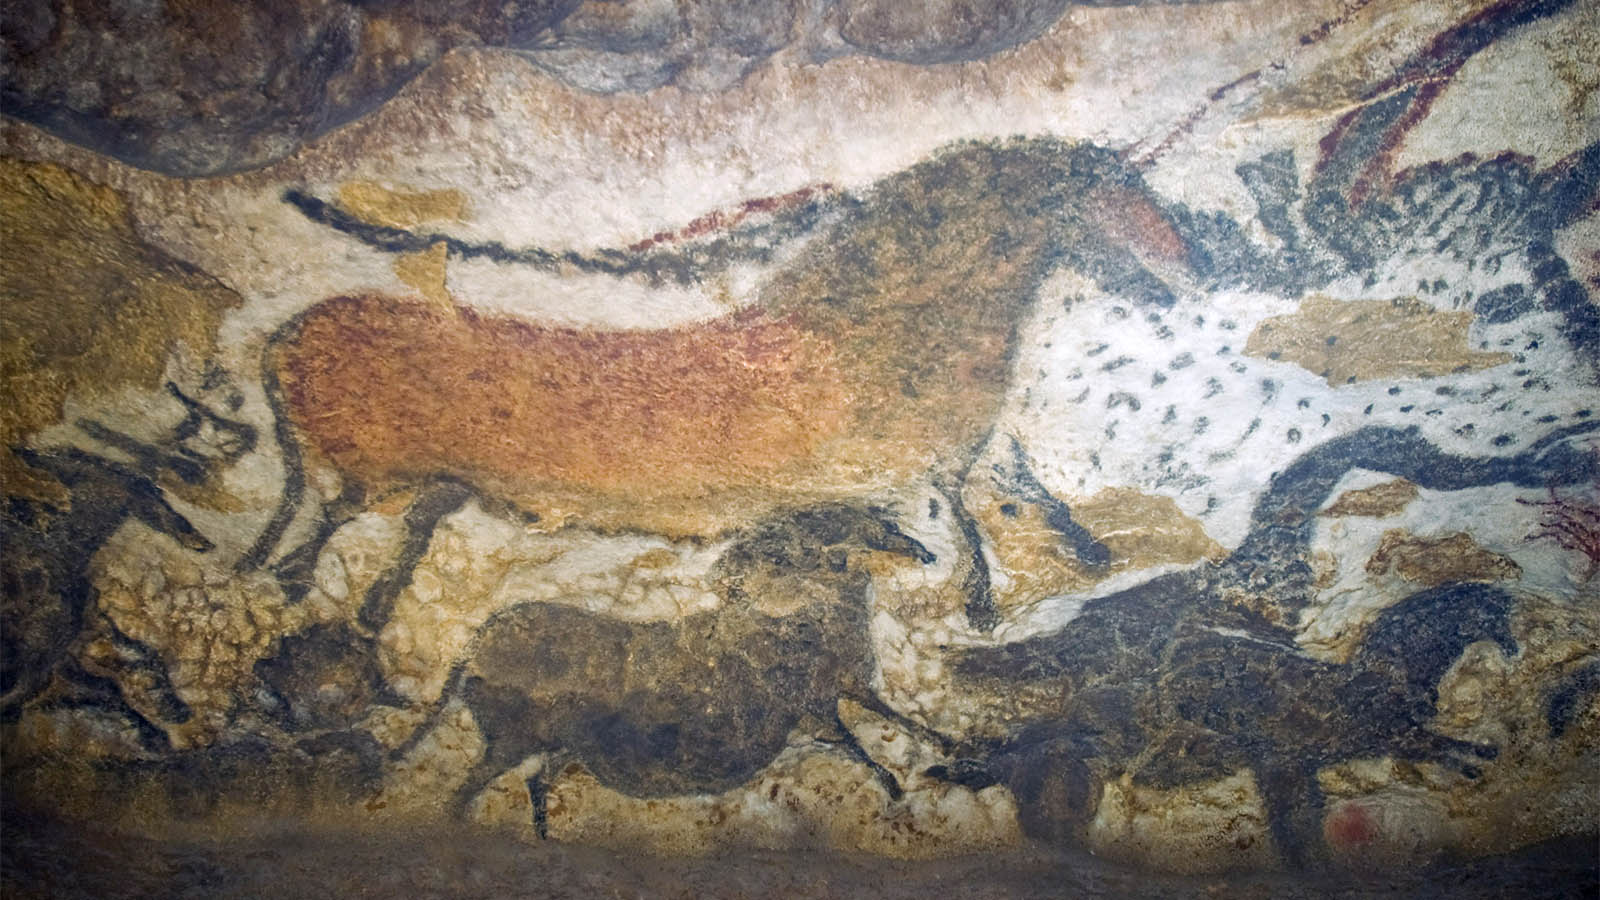 ציורי קיר של חיות במערה לאסקו, דרום צרפת. (קרדיט: ויקימדיה קומונס)